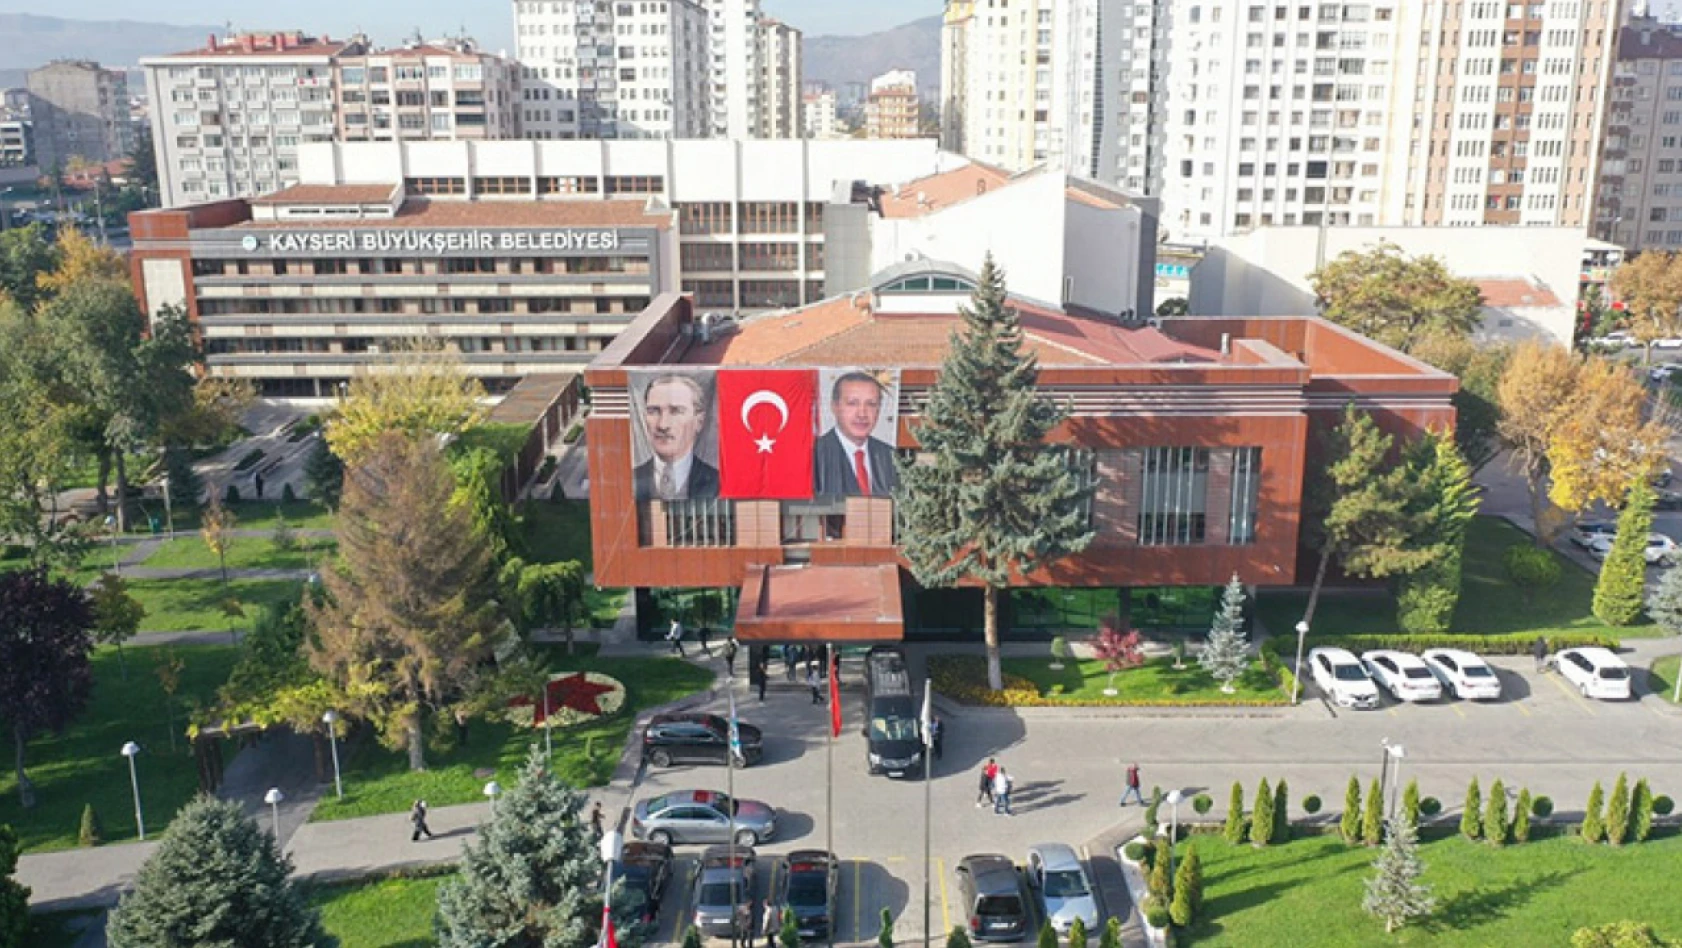 İşte Kayseri Büyükşehir Belediyesinin Meclis Üyeleri!